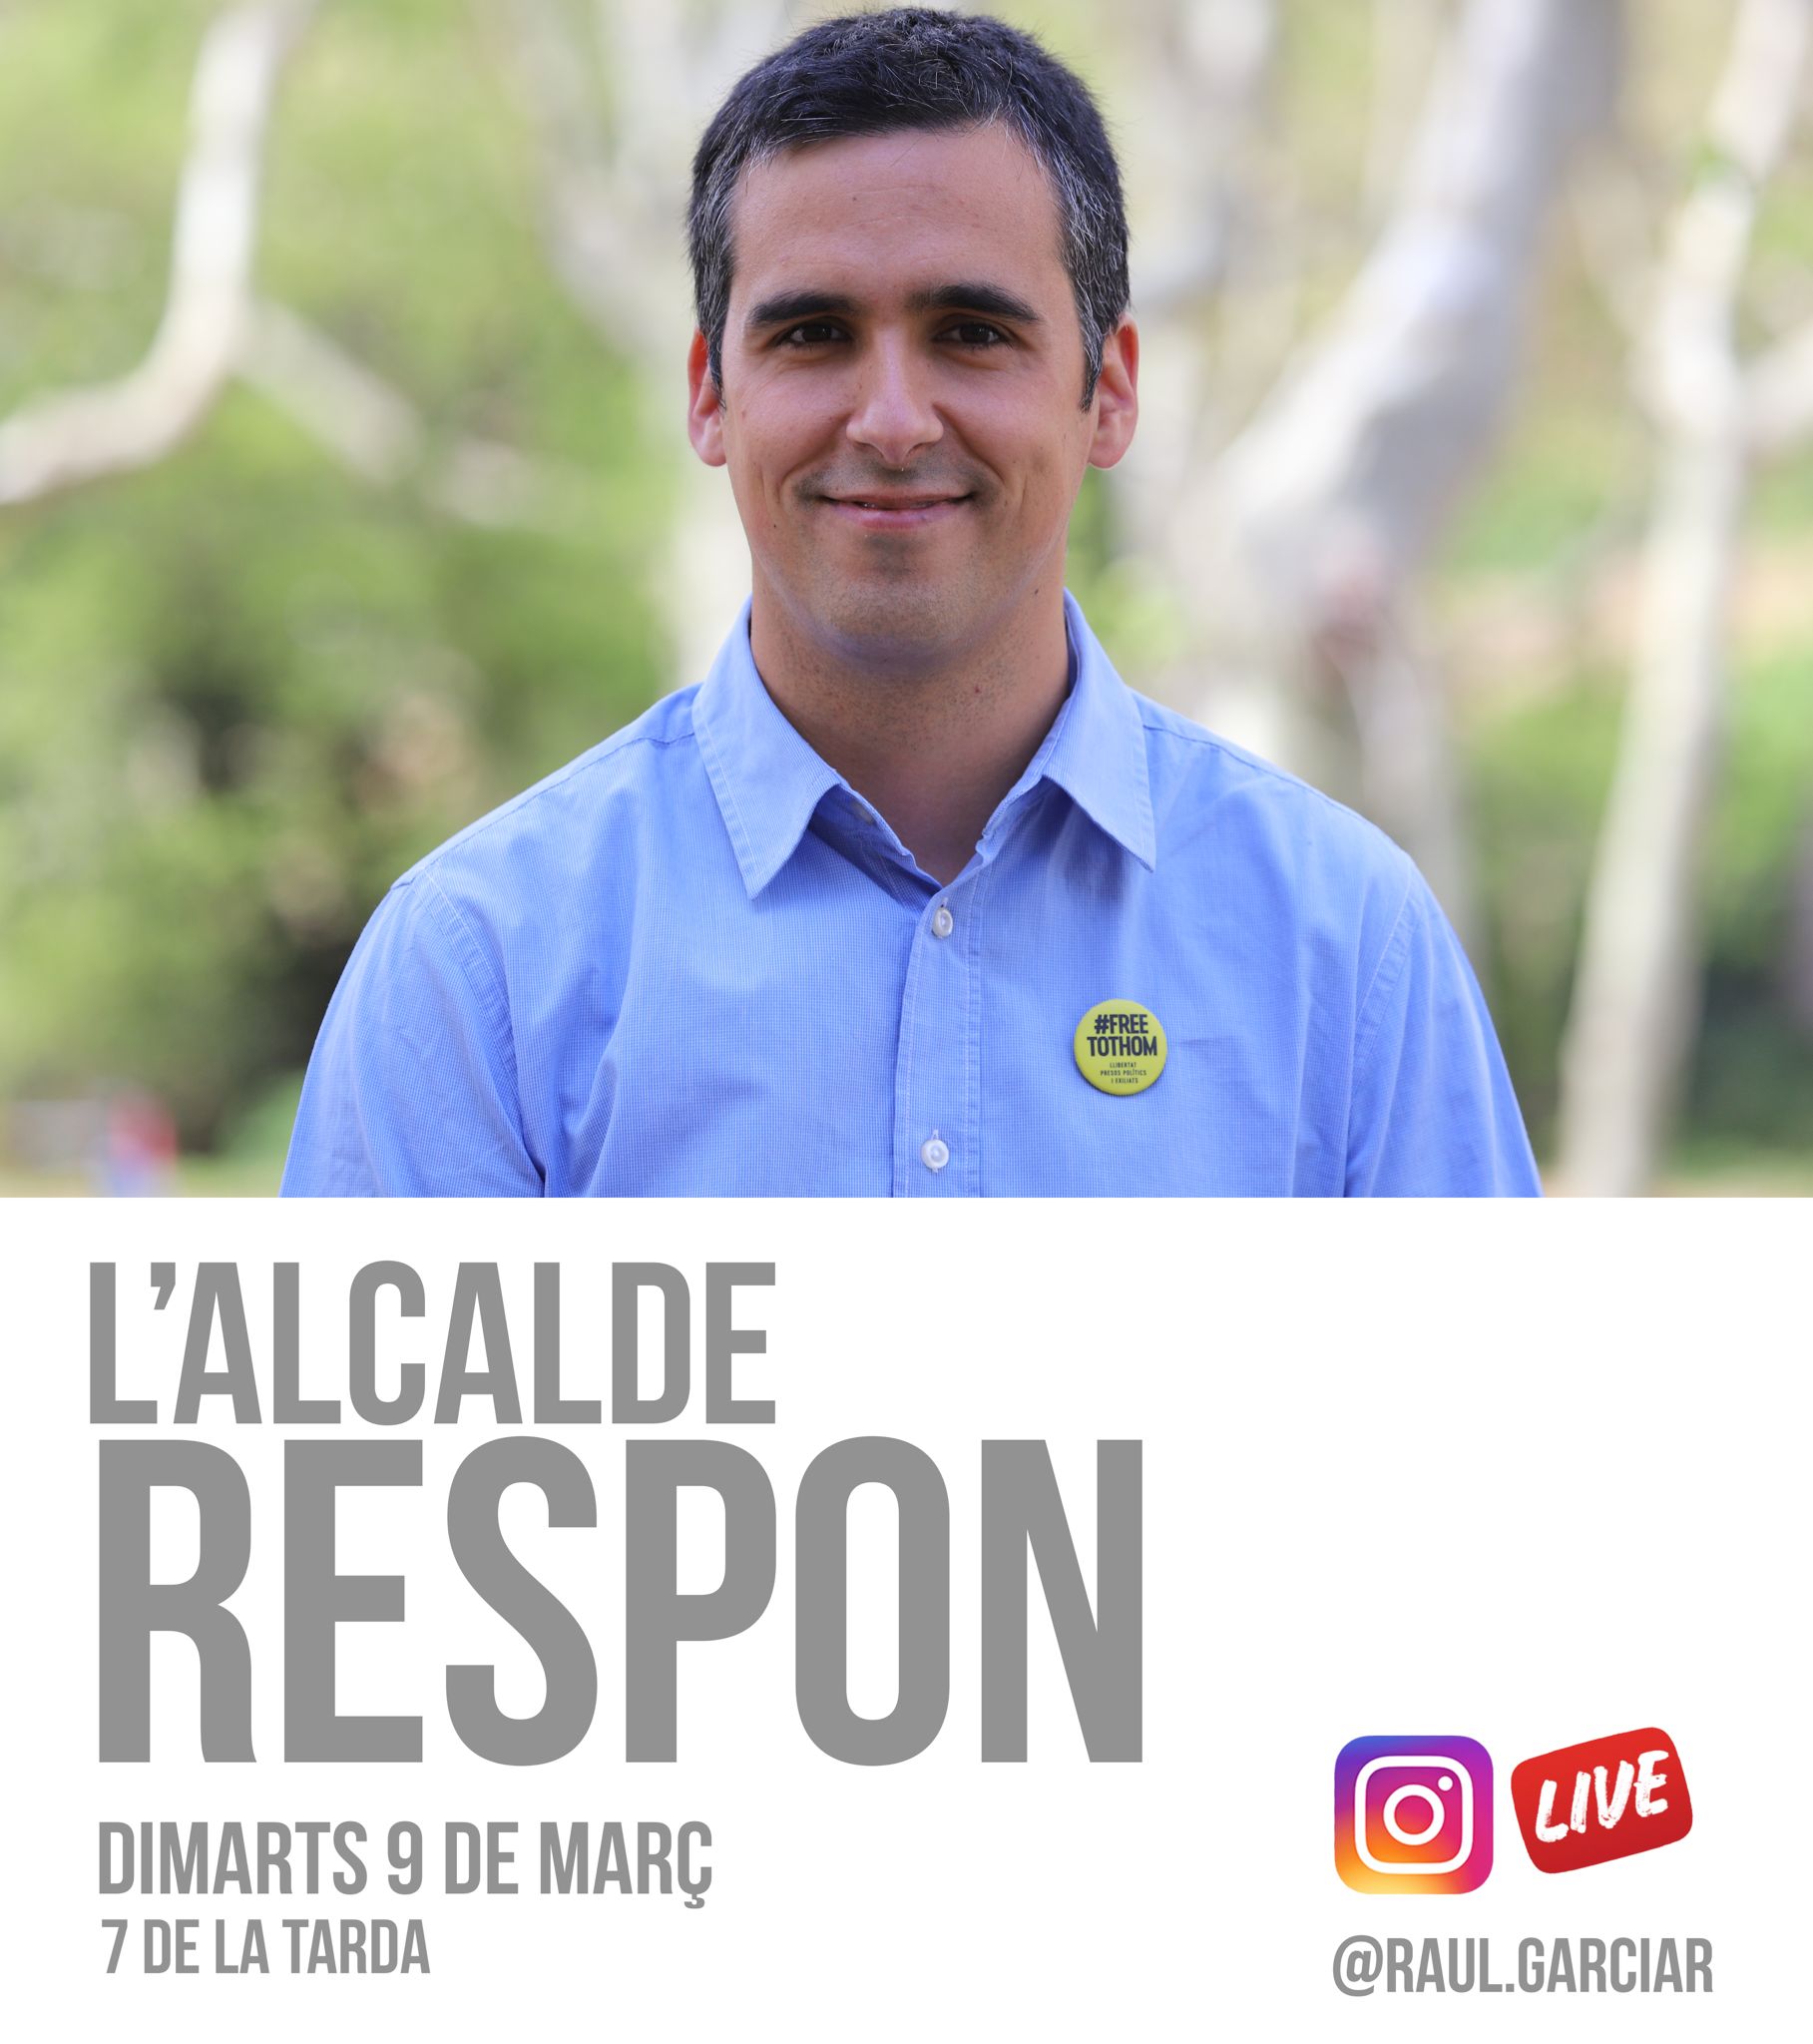 Instagram live alcalde